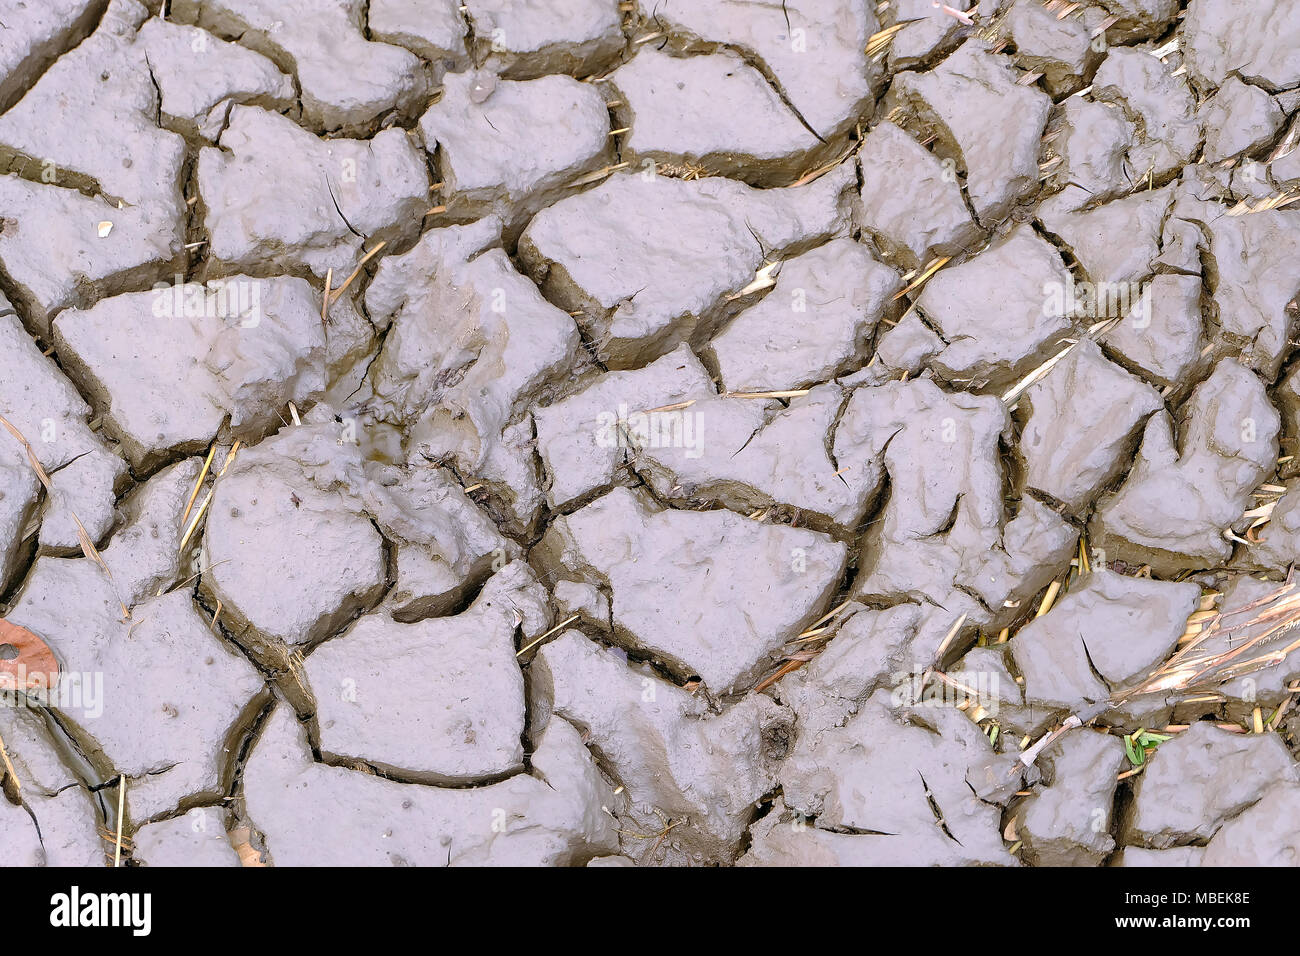 Résumé de la surface de la boue, des fissures du terrain dans la sécheresse, la texture du sol et de la boue sèche, la sécheresse de l'environnement Banque D'Images